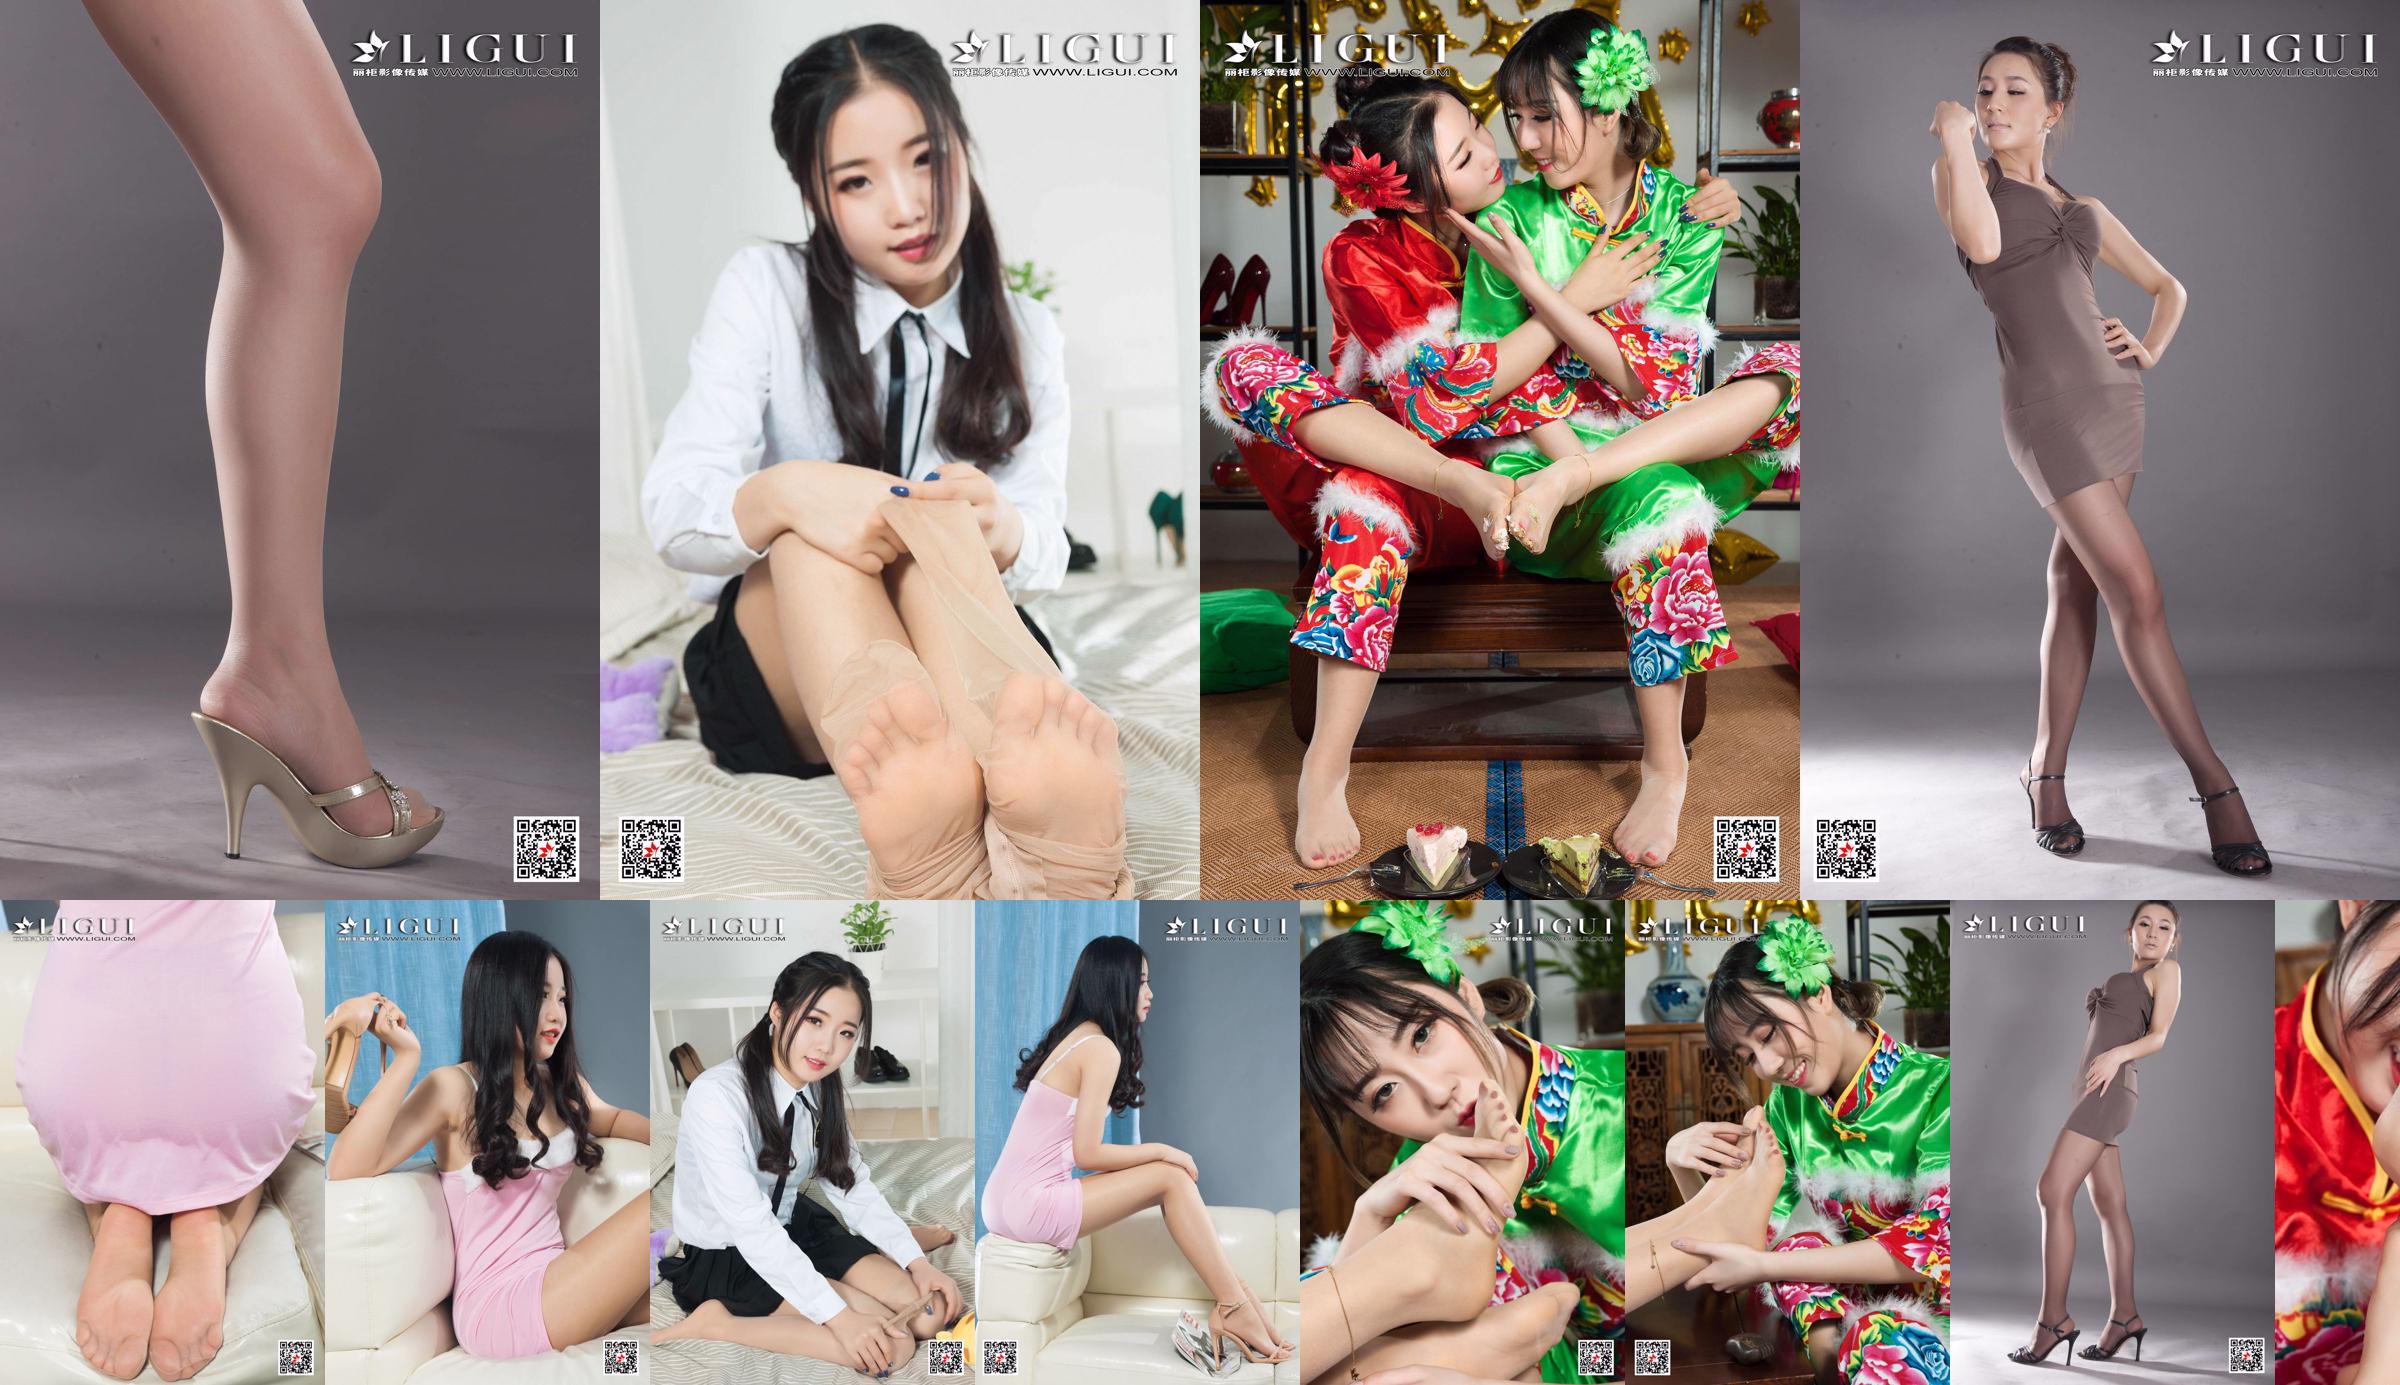 [丽 柜 Ligui] Modella Yuanyuan "Studio Shot Beauty" No.3d4950 Pagina 2